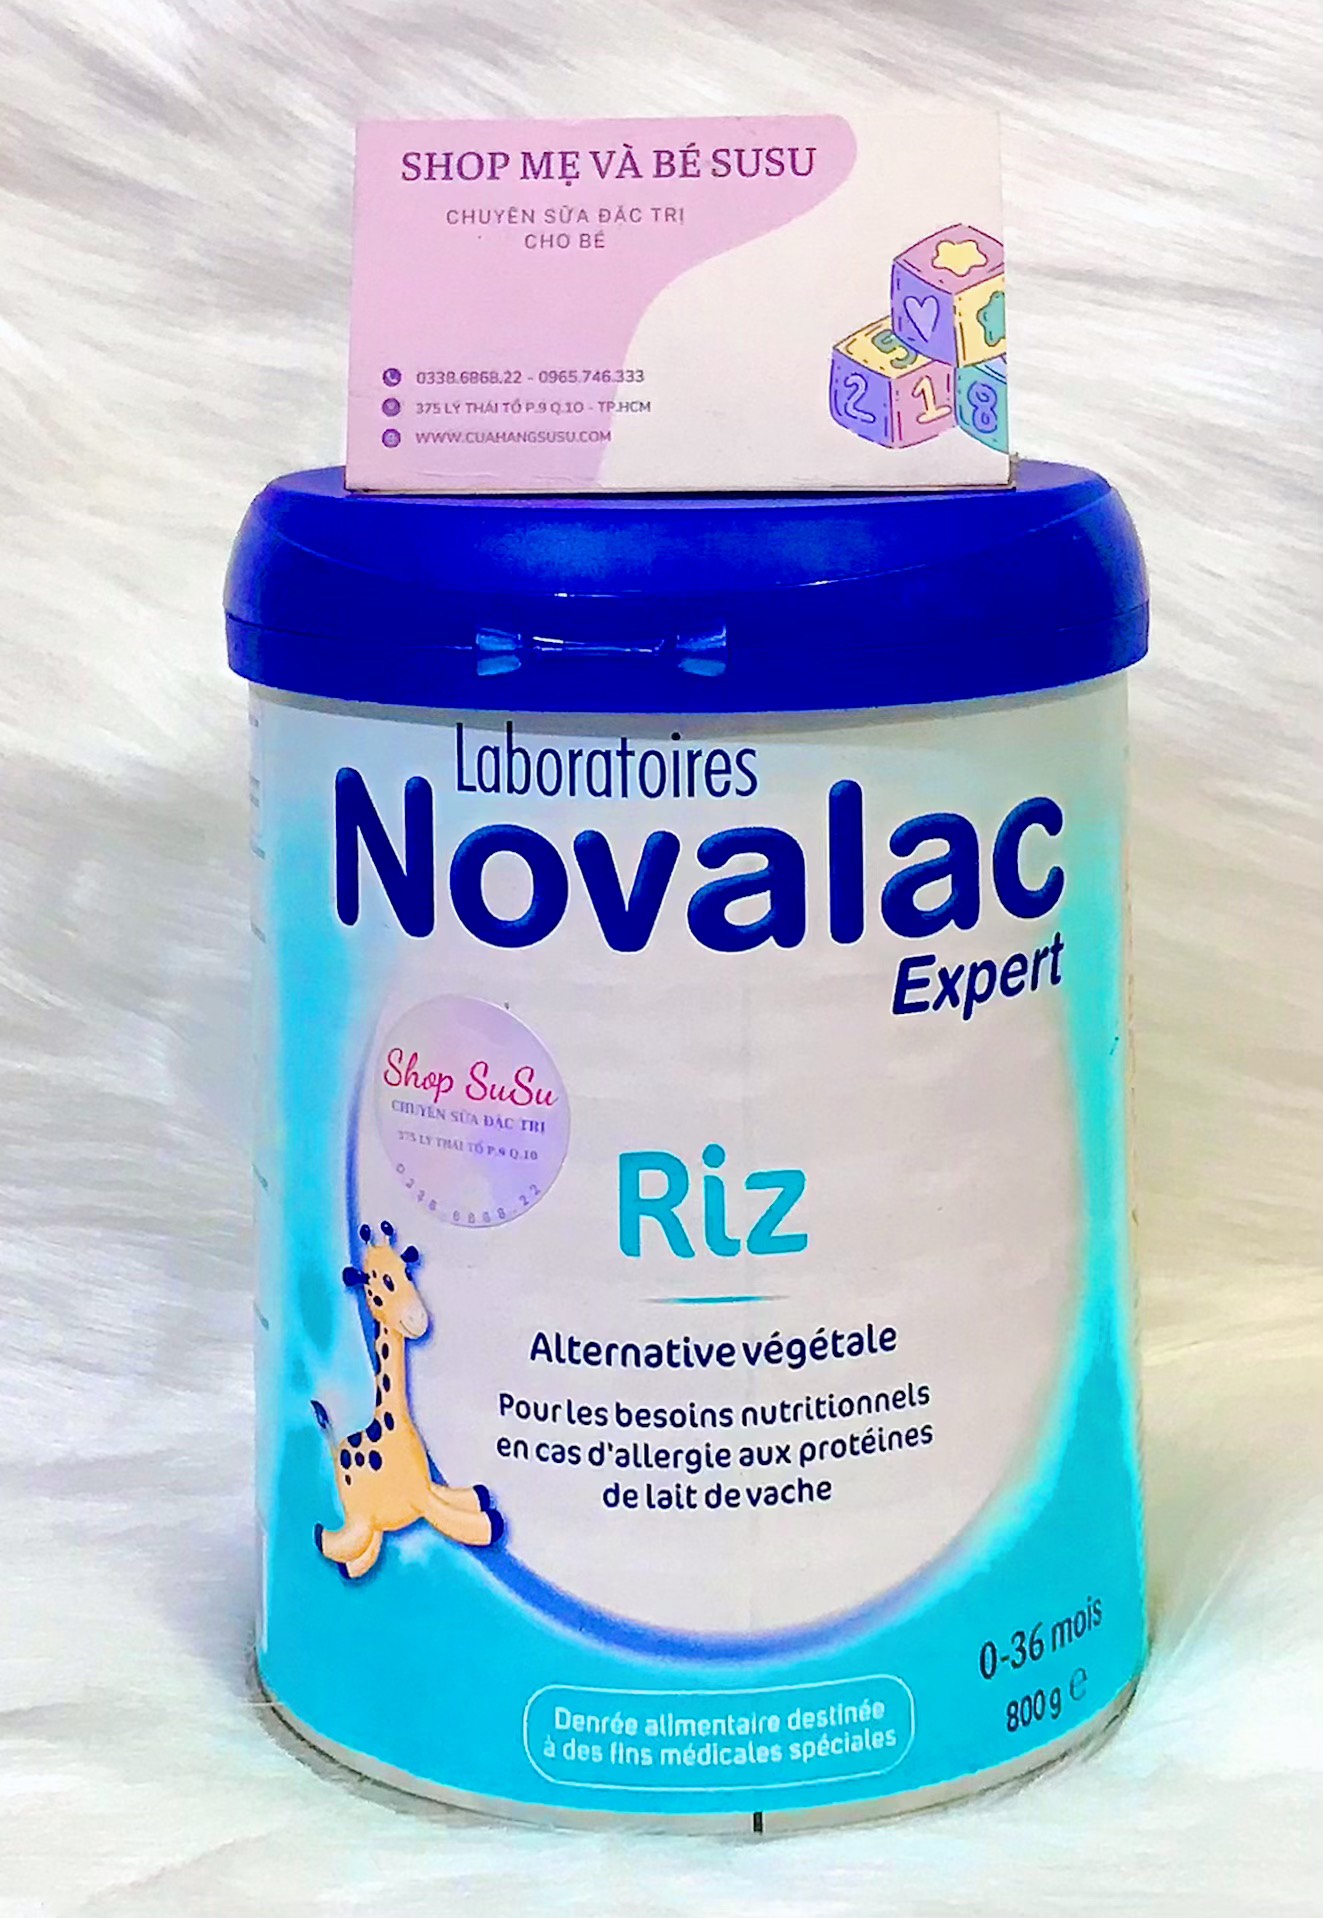 HÀNG AIR Sữa Novalac Riz của Pháp dành cho bé dị ứng đạm bò 800g